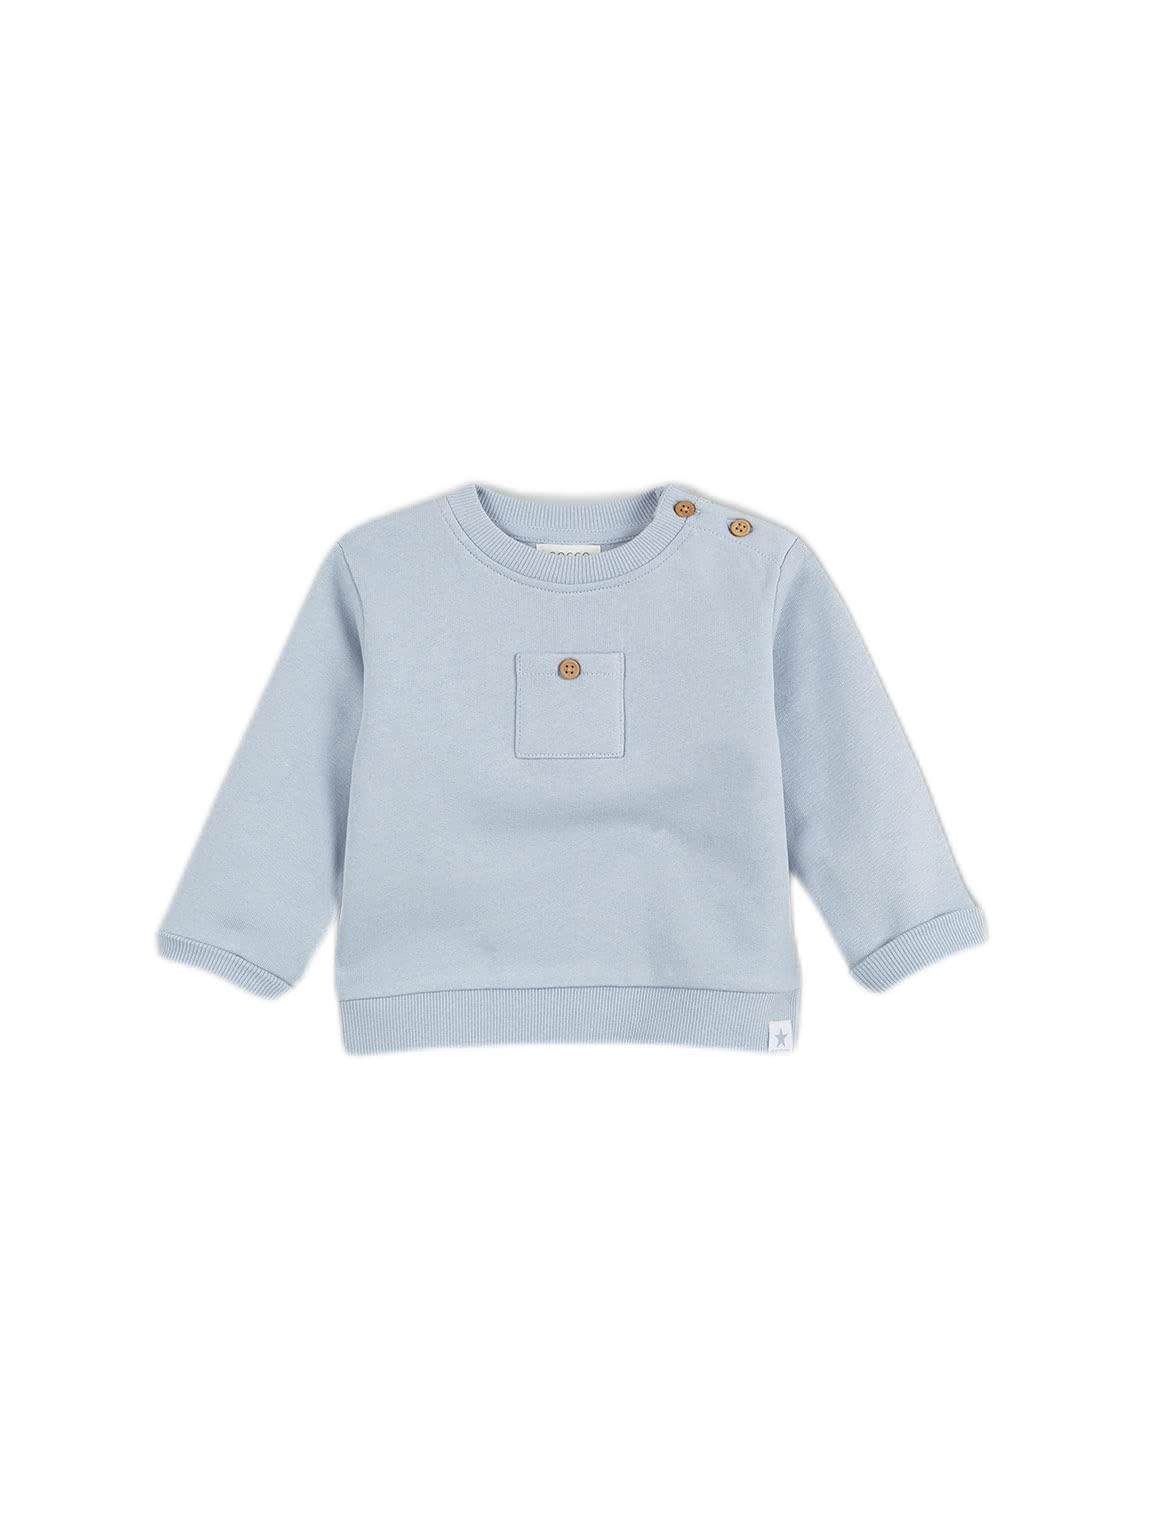 Gocco Blaues Sweatshirt mit Tasche, Himmelblau B, Standard für Babys, Himmelblau (Bb)